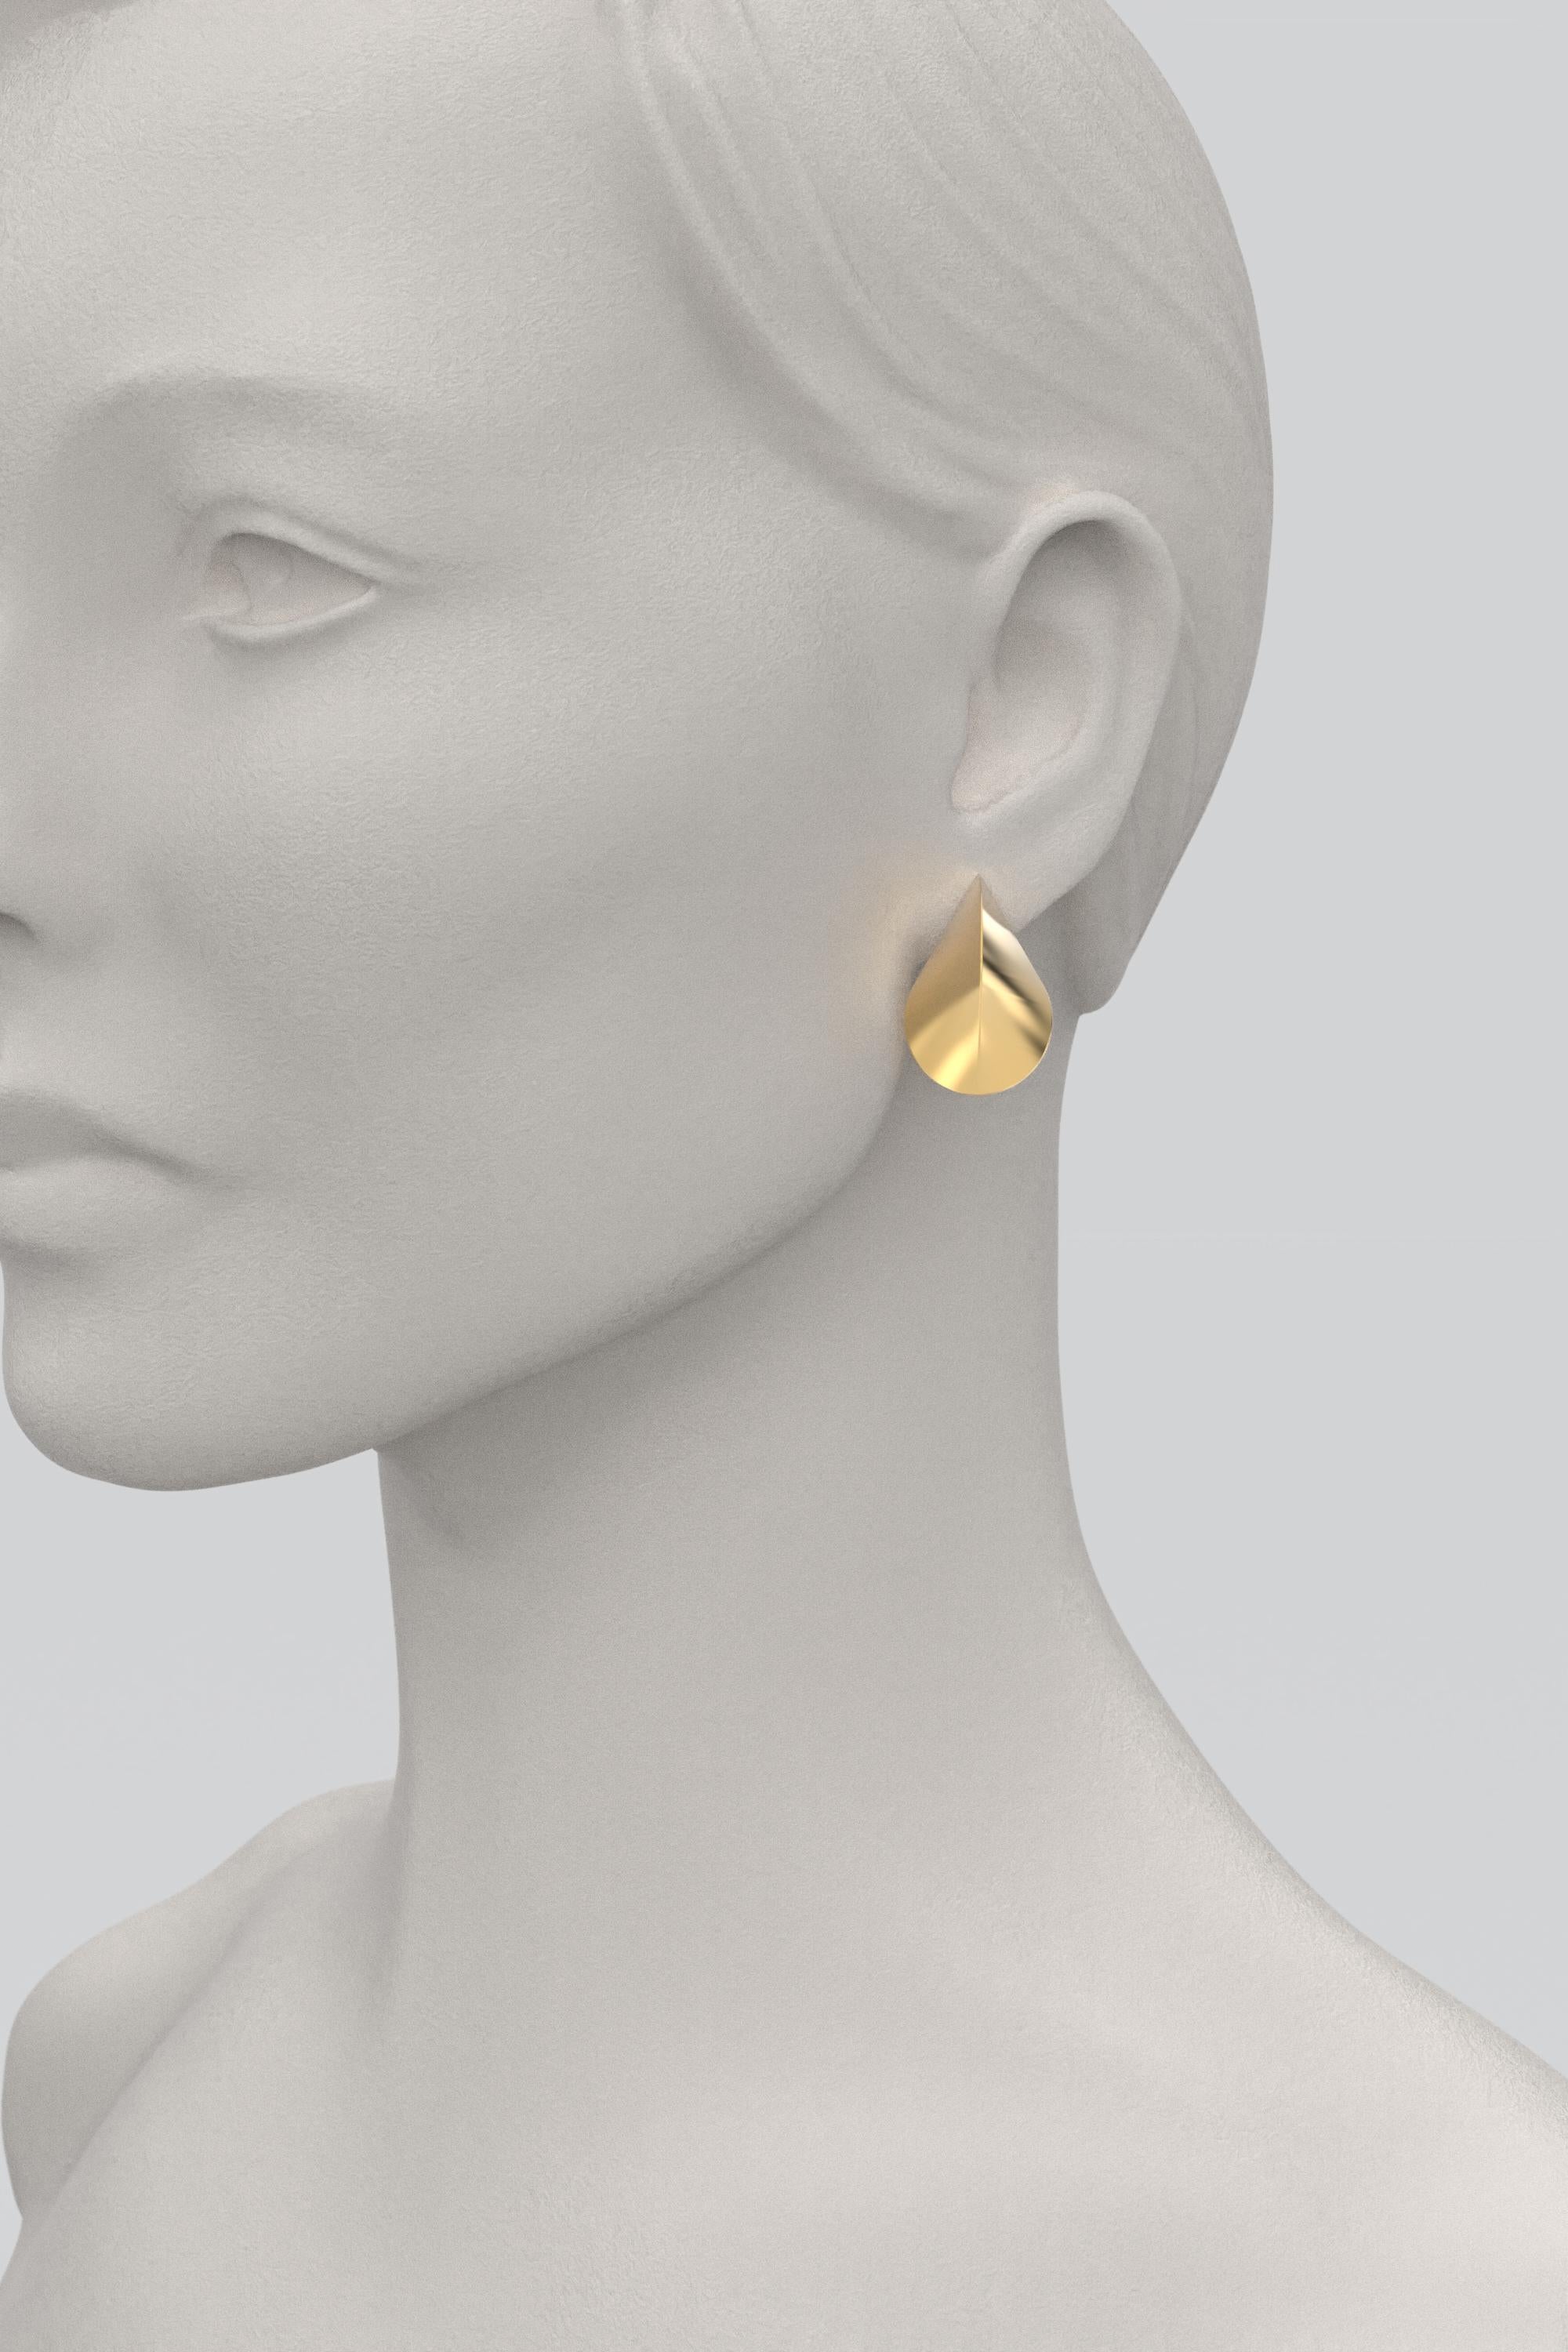 Italian 18k Gold Earrings, Modern Elegant Earrings by Oltremare Gioielli For Sale 2